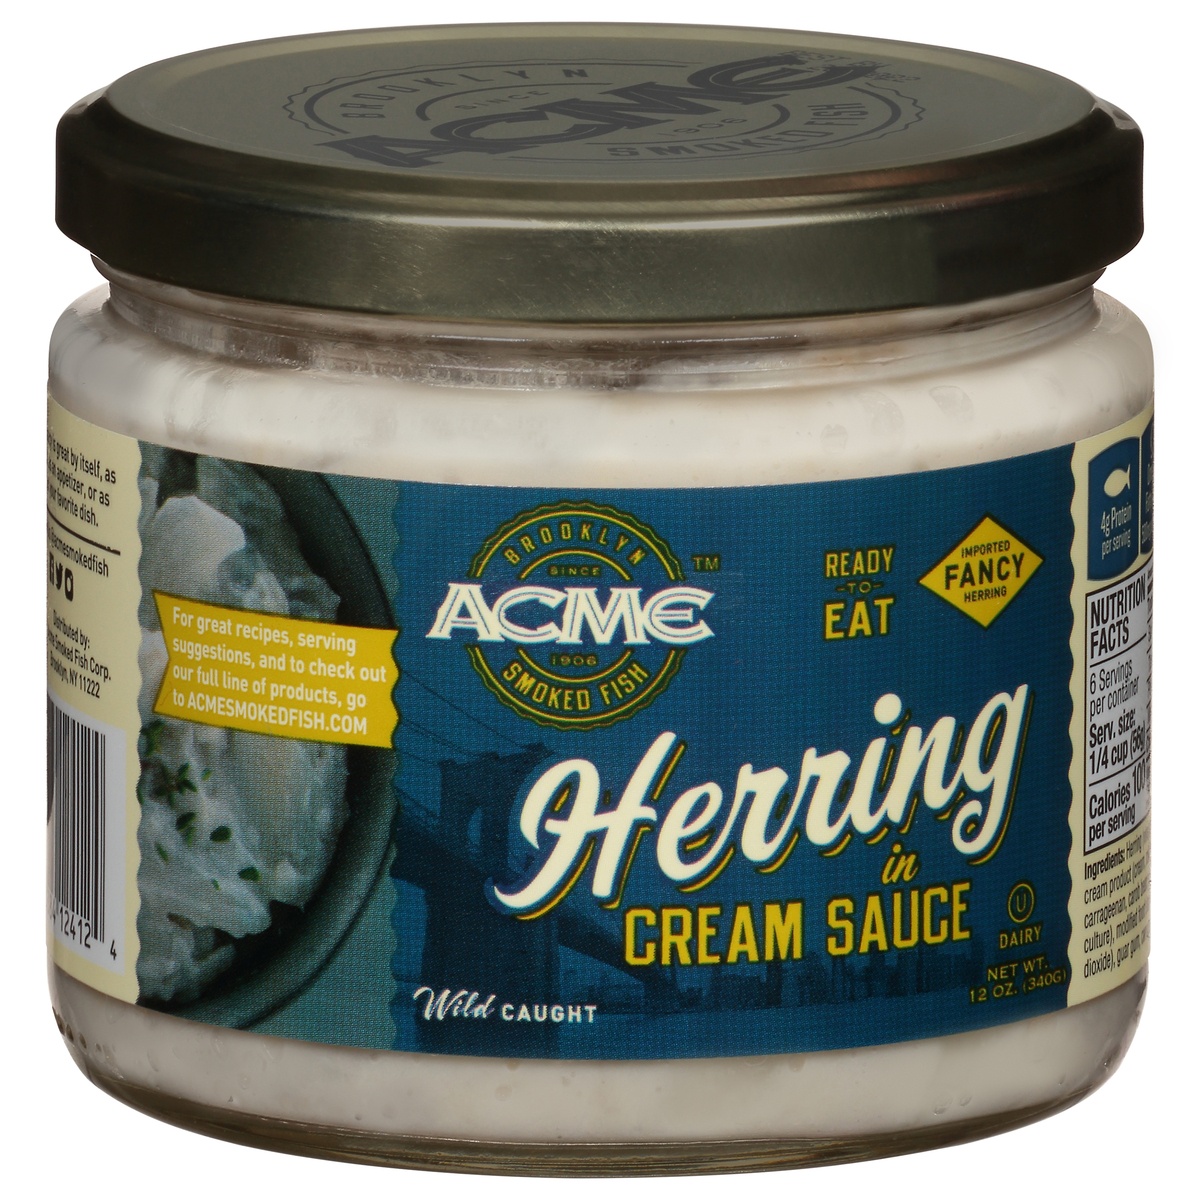 slide 1 of 1, ACME Smoked Fish Herring in Cream Sauce, 12 oz